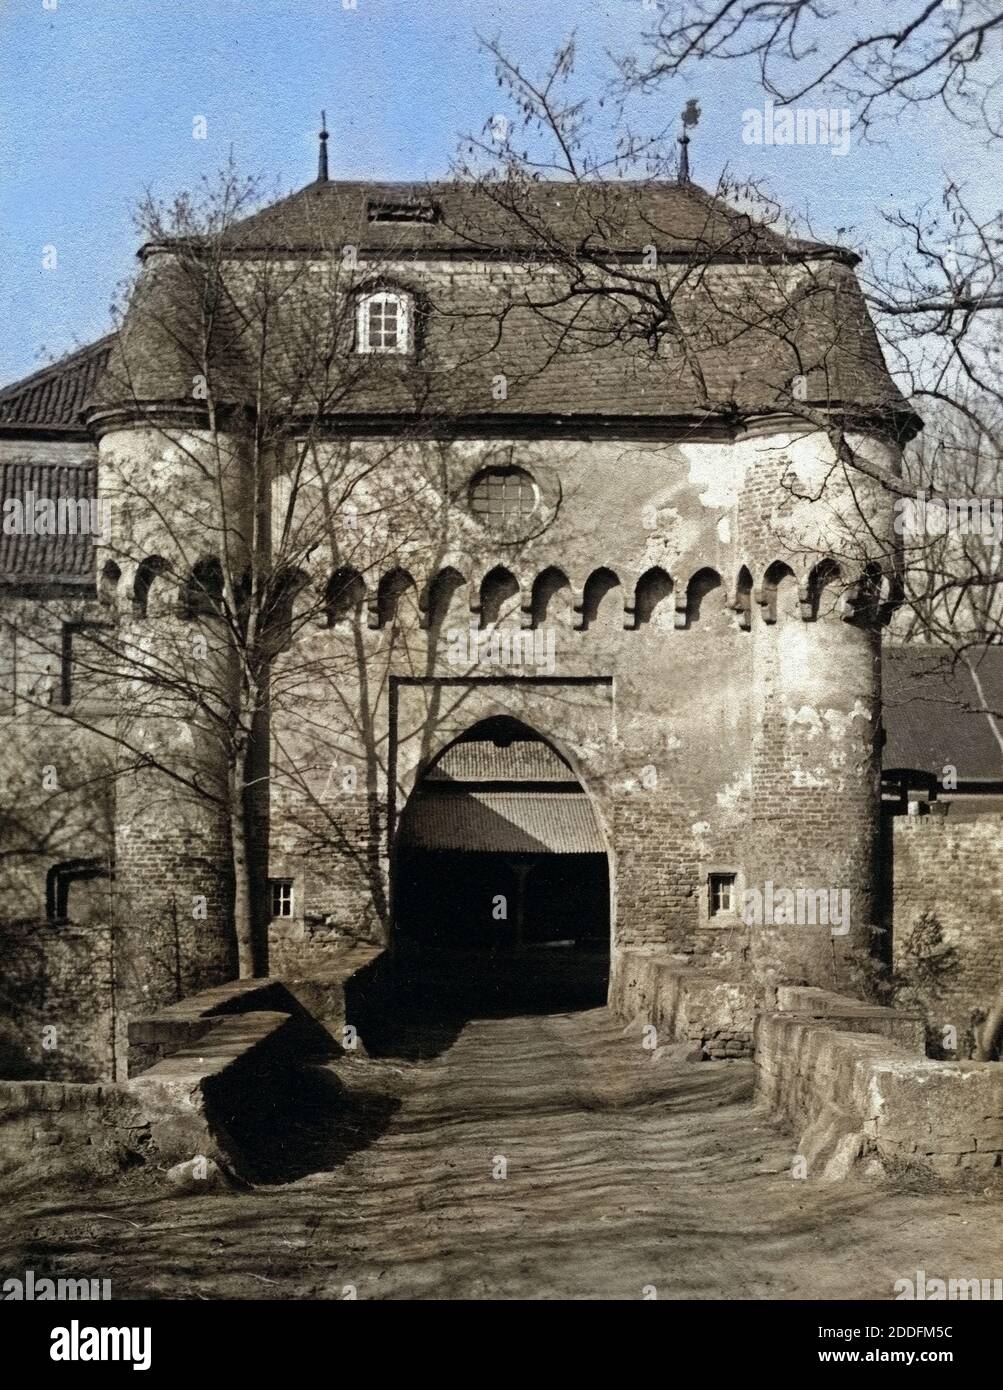 Die Große Burg in Kleinbüllesheim bei Euskirchen, Deutschland 1920er Jahre. Grosse Burg castle at Kleinbuellesheim near Euskirchen, Germany 1920s. Stock Photo